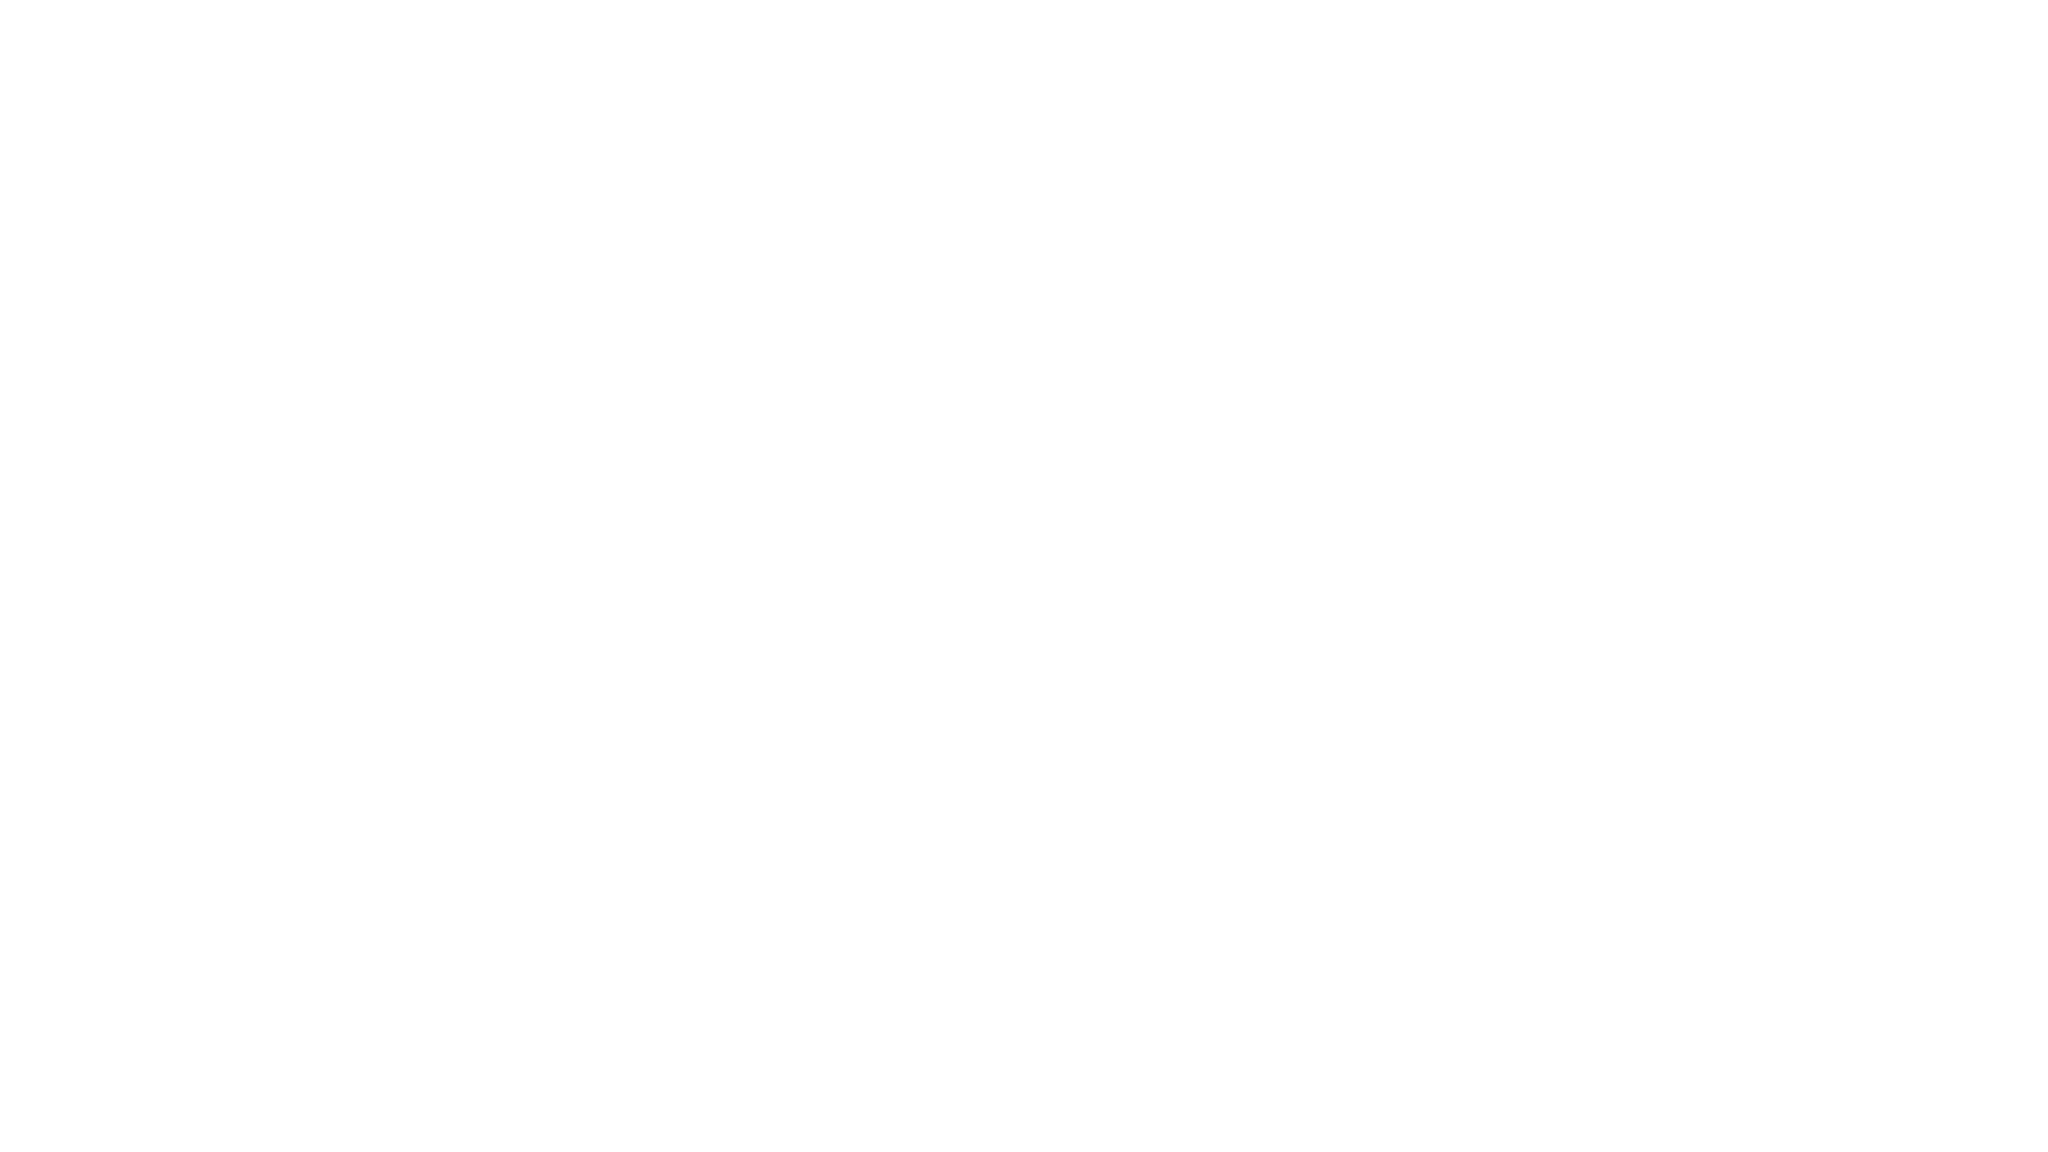 Campamentos de verano cerca de usted (Qué buscar) - Finest campamentos de verano de Estados Unidos